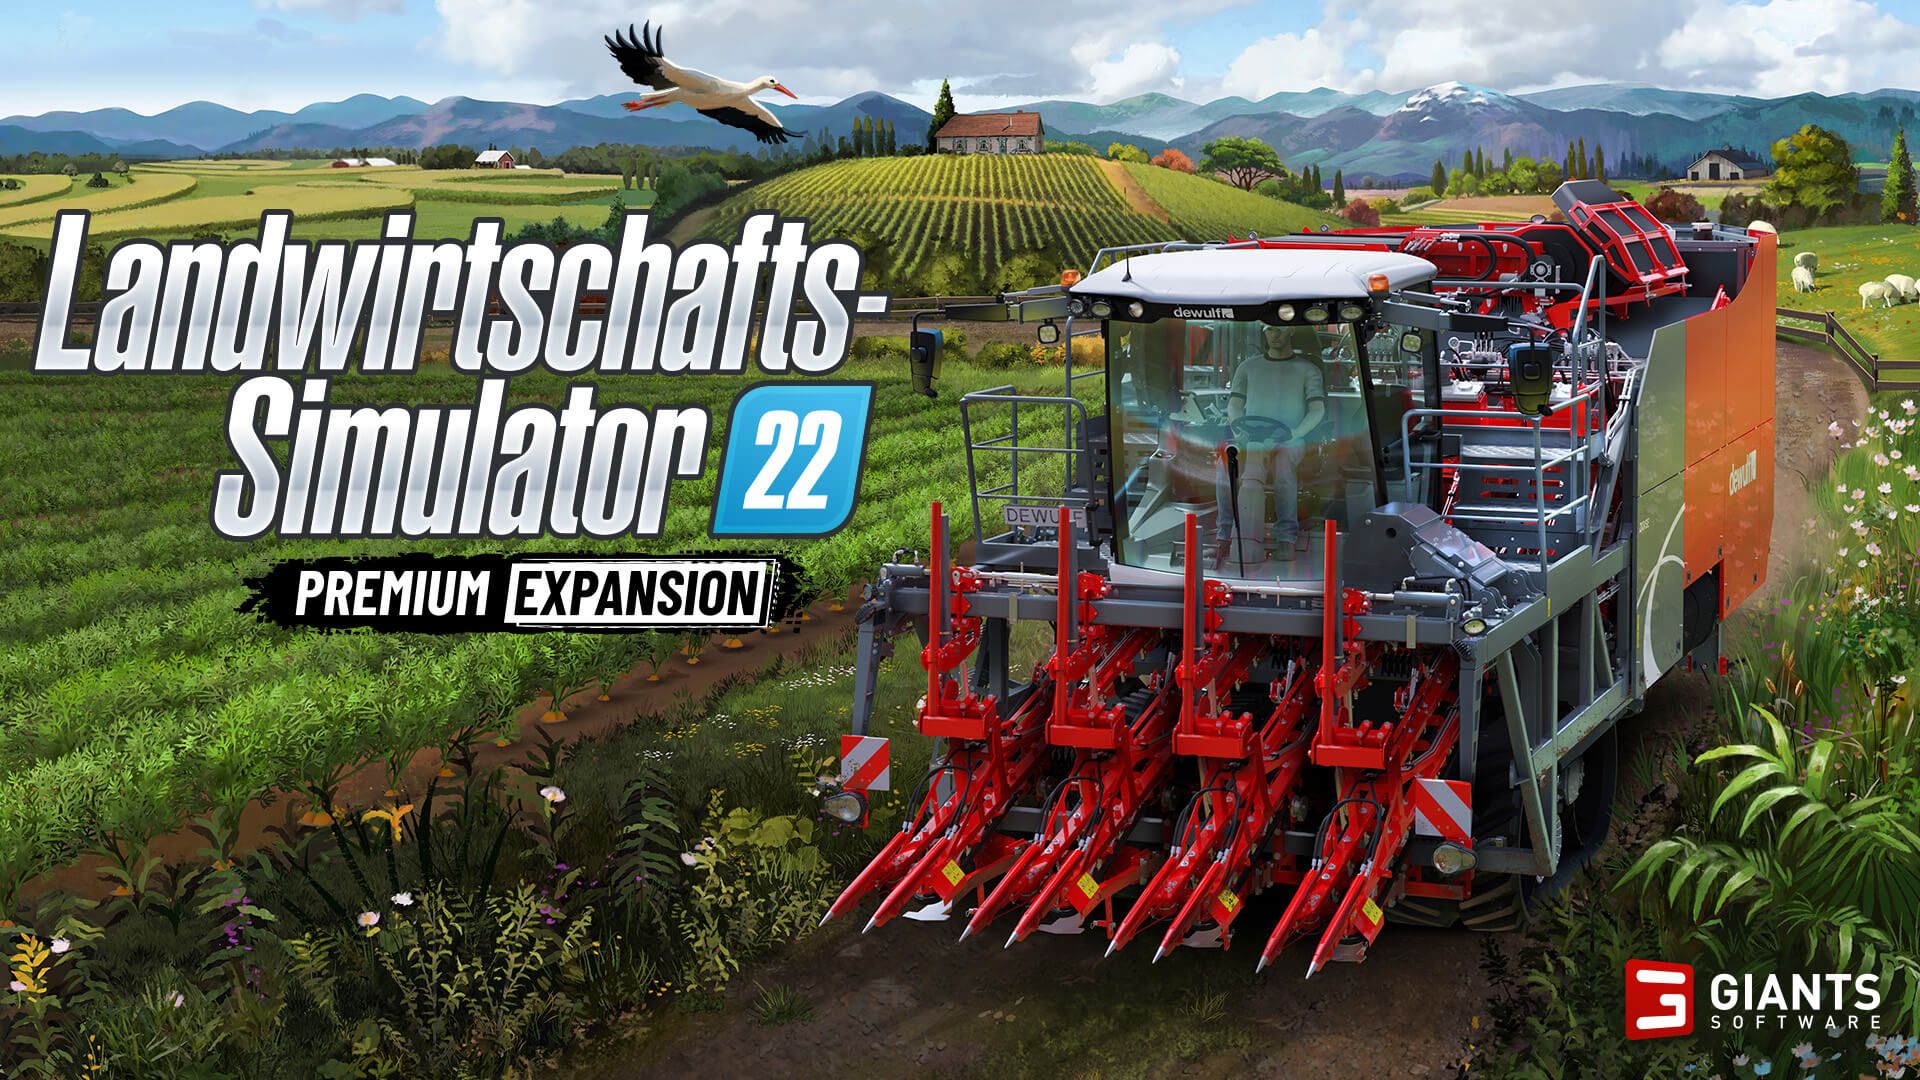 verkaufte in unabhängiges 22: Einheiten - 1,5 Ernte der TestingBuddies Dein Landwirtschafts-Simulator Woche beim Millionen Spielemagazin - ersten Über Reiche